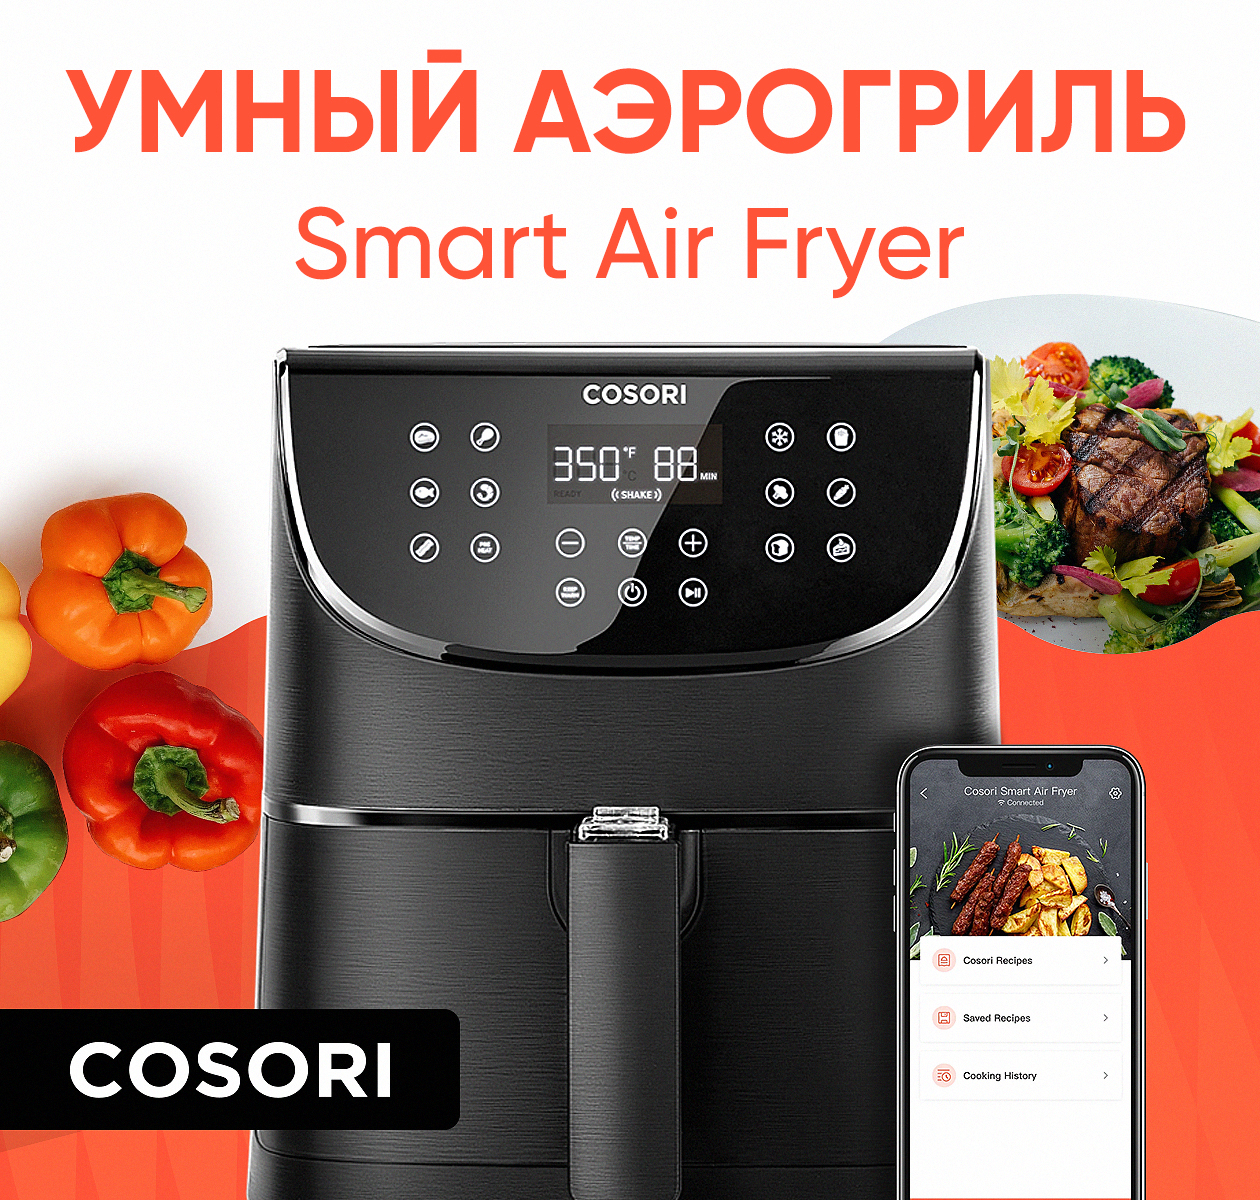 Аэрогриль COSORI Smart Air Fryer CS158-AF черный аэрогриль gfgril gfa 3500 air fryer white